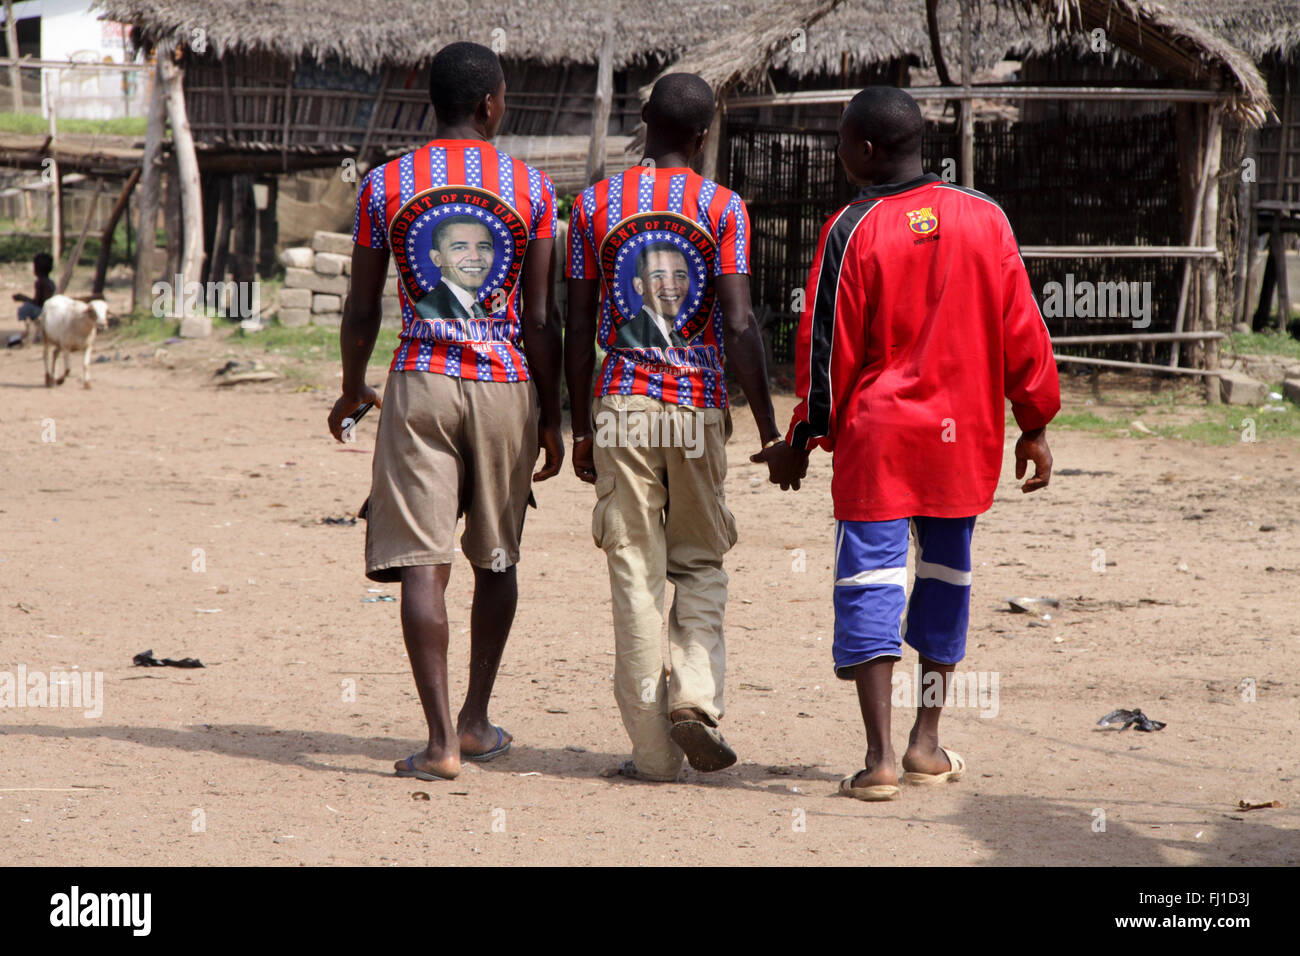 Drei Jungs gehen in Aguégués, Benin, einige tragen Präsident Obama T-Shirt, Afrika Stockfoto